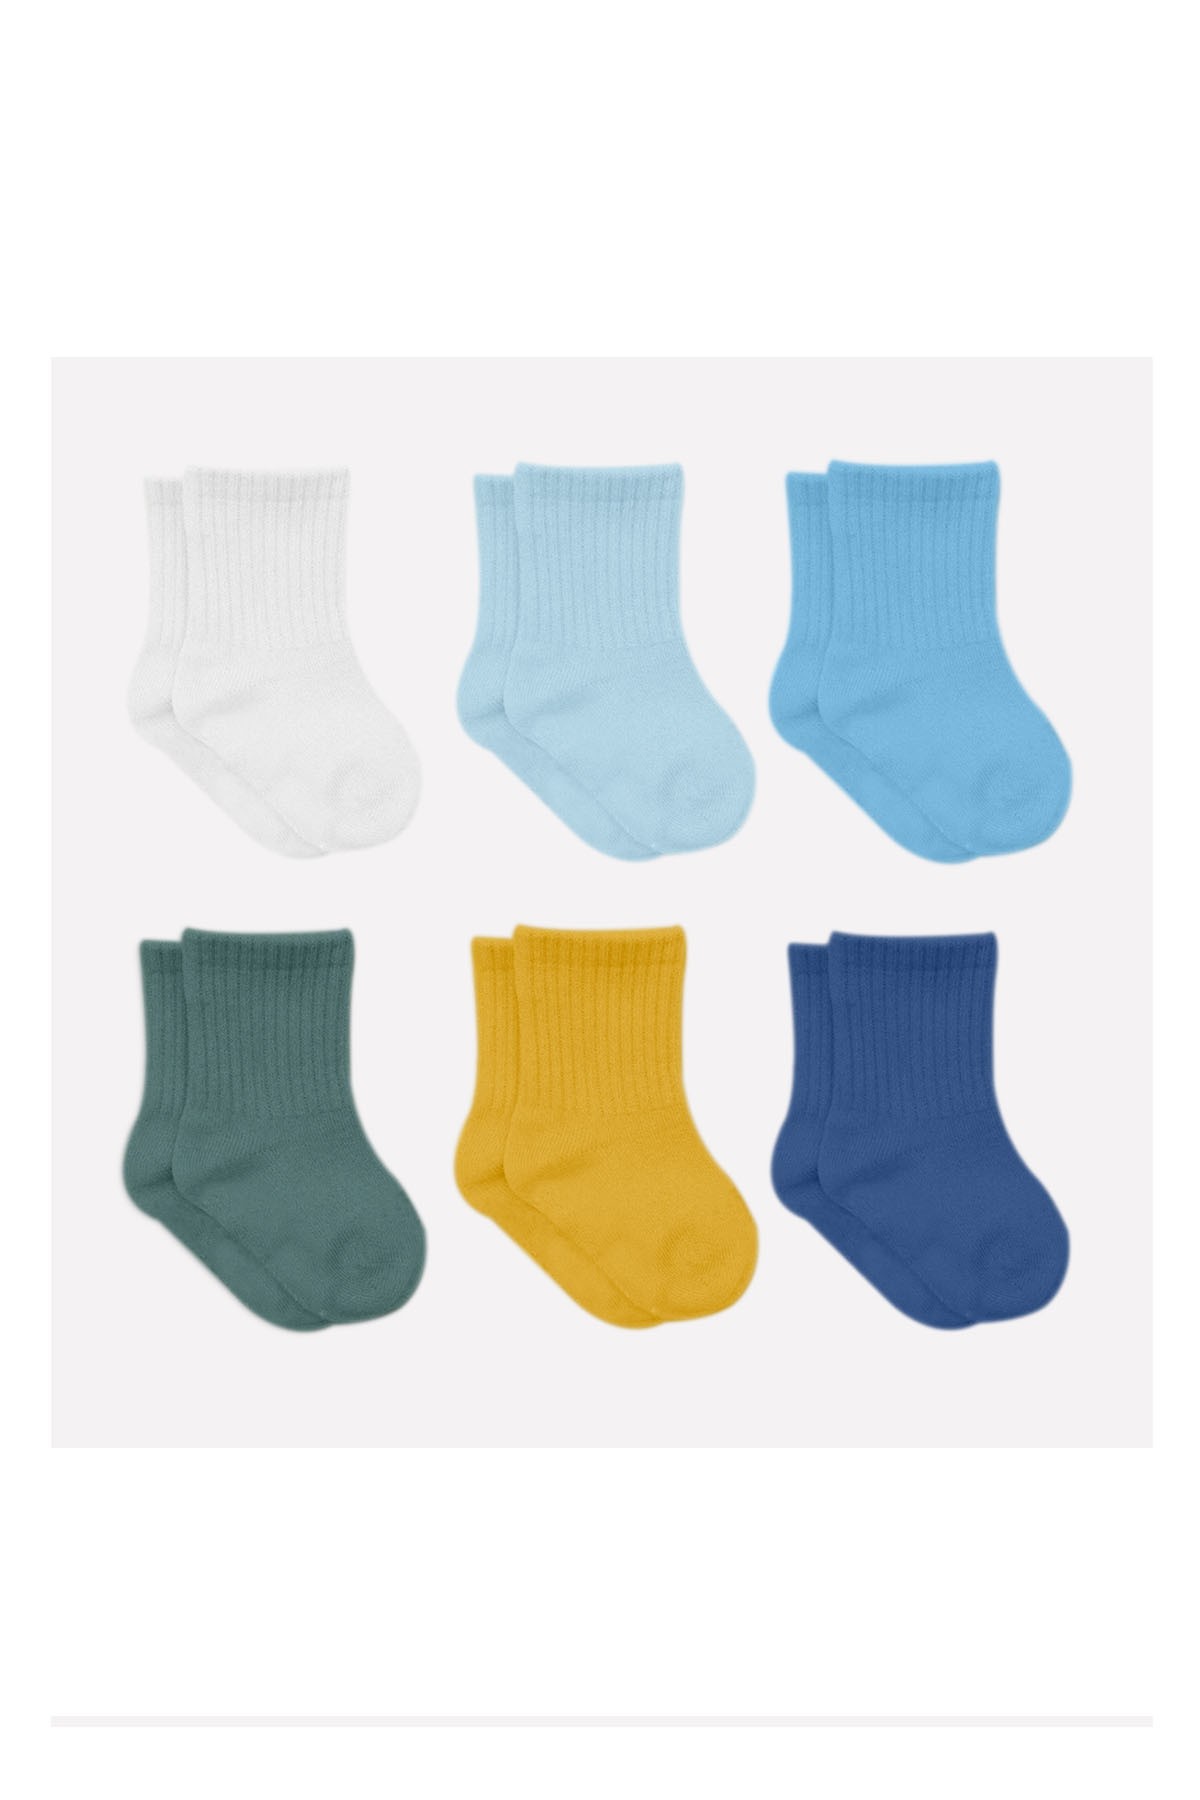 Bistyle 6'lı Penye Bebek Çorabı Çok Renkli